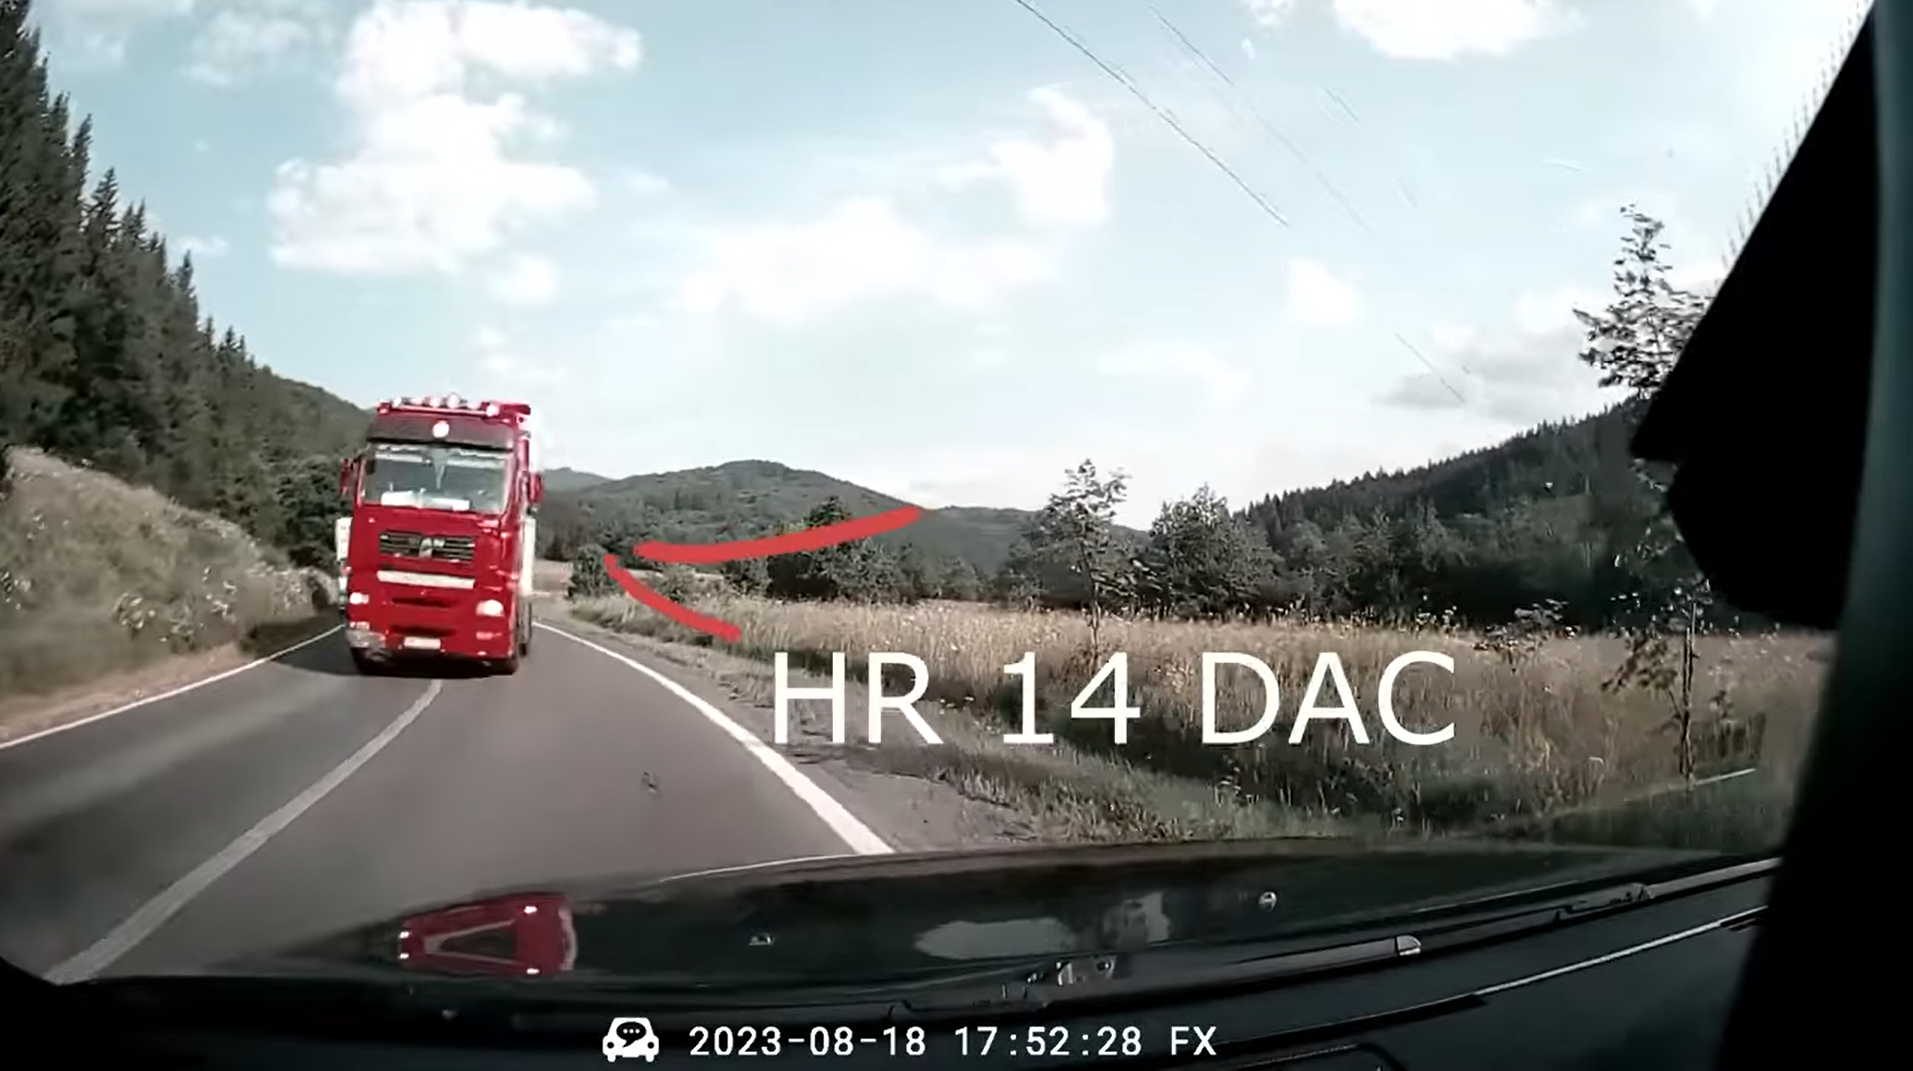 Fedélzeti kamera rögzítette, ahogy folytonos vonalon előz a HR rendszámú teherautó Brassó megyében